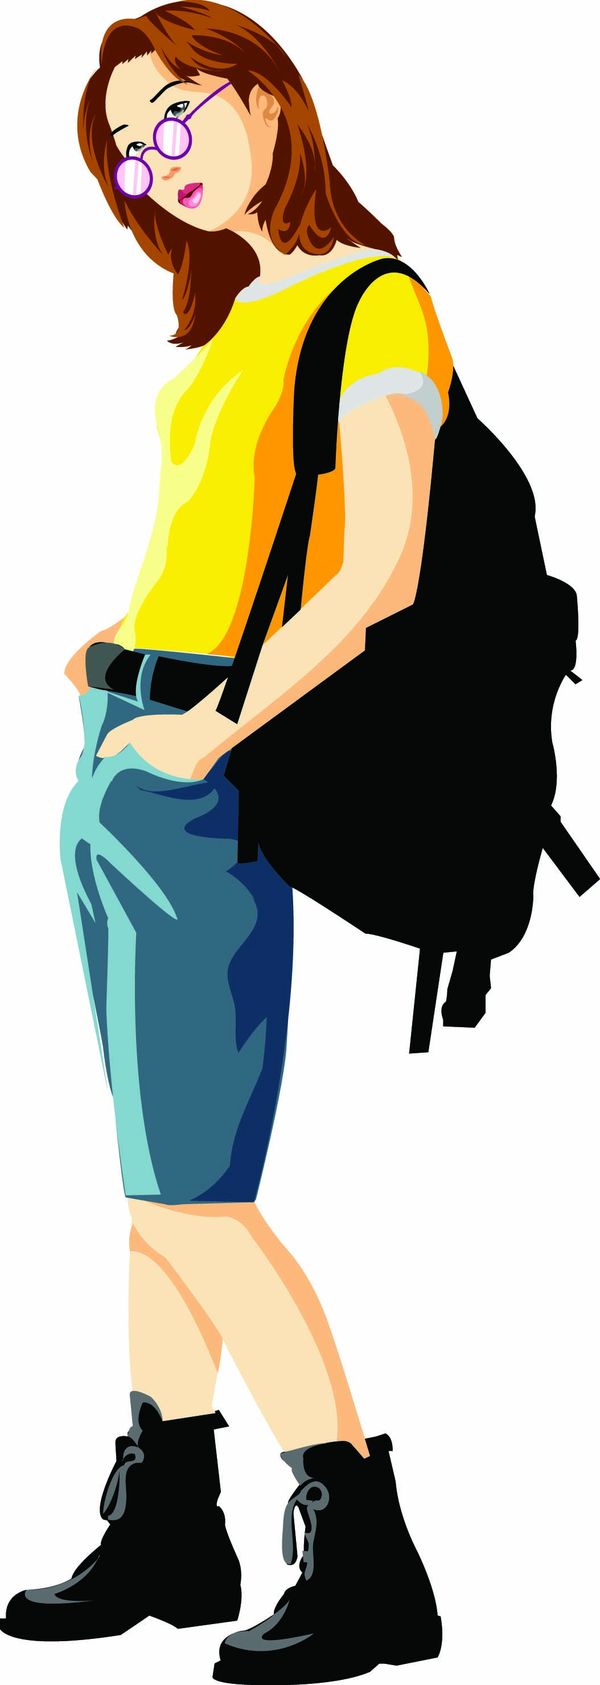 女性百态图片-标题插画图 去踏青 黑色背包 中